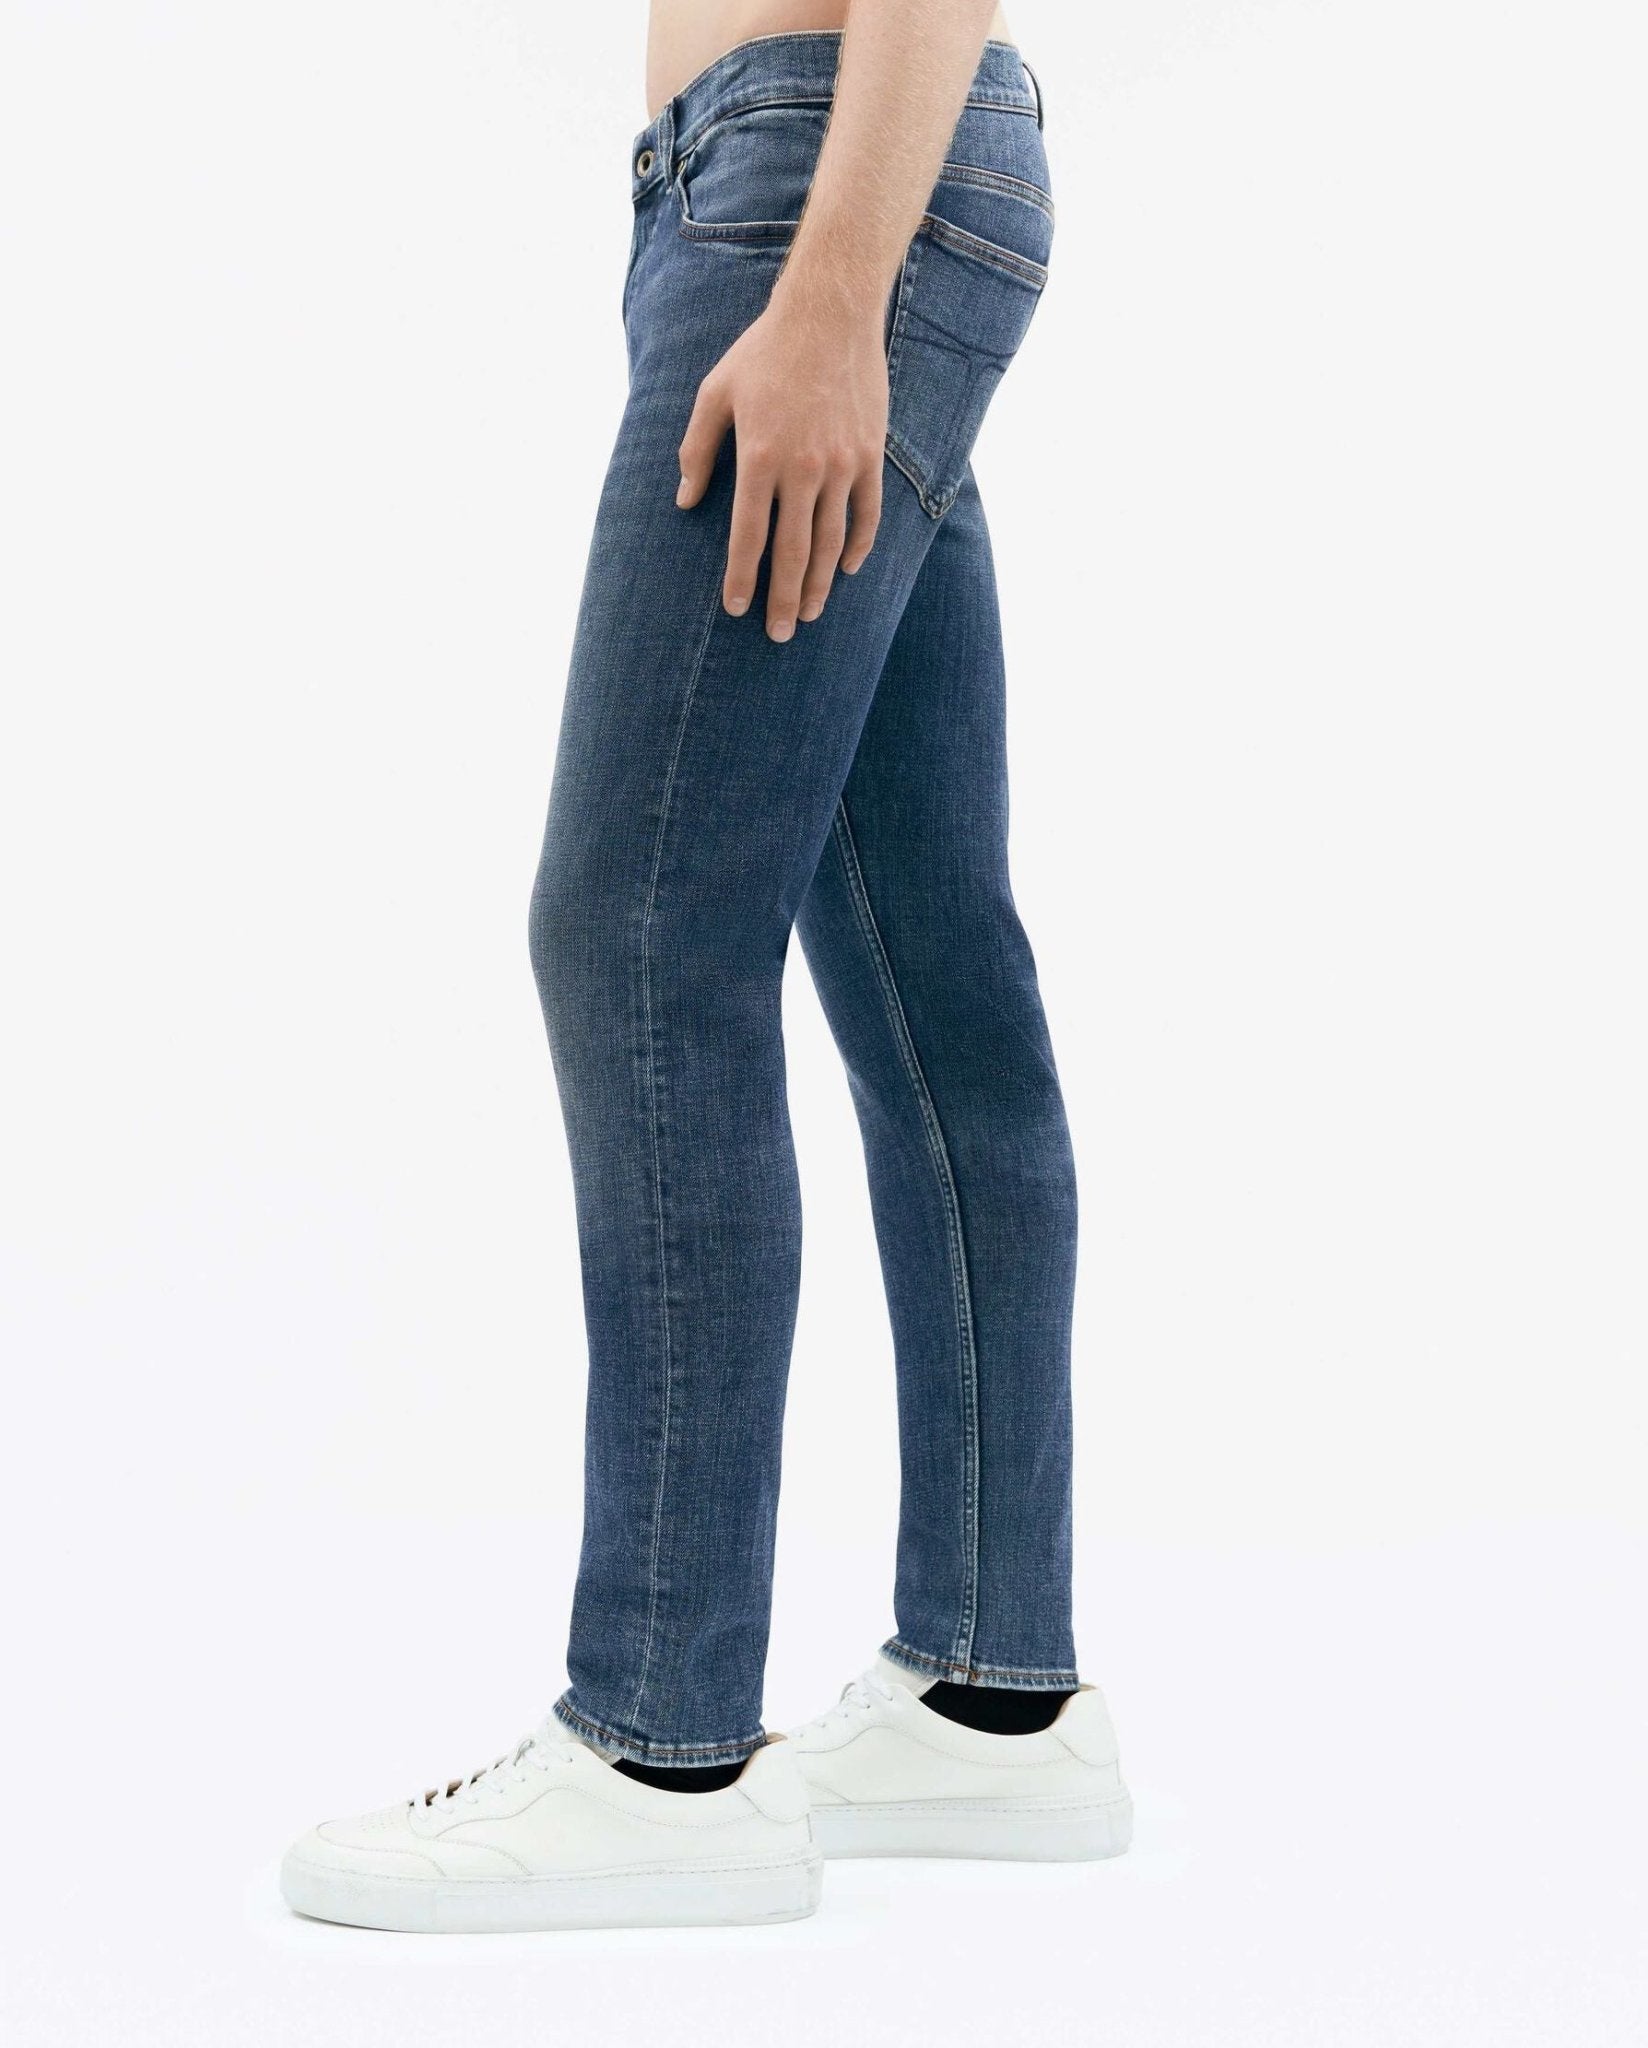 Evolve Jeans - Tiger of Sweden - Danali - T72158001-209-28